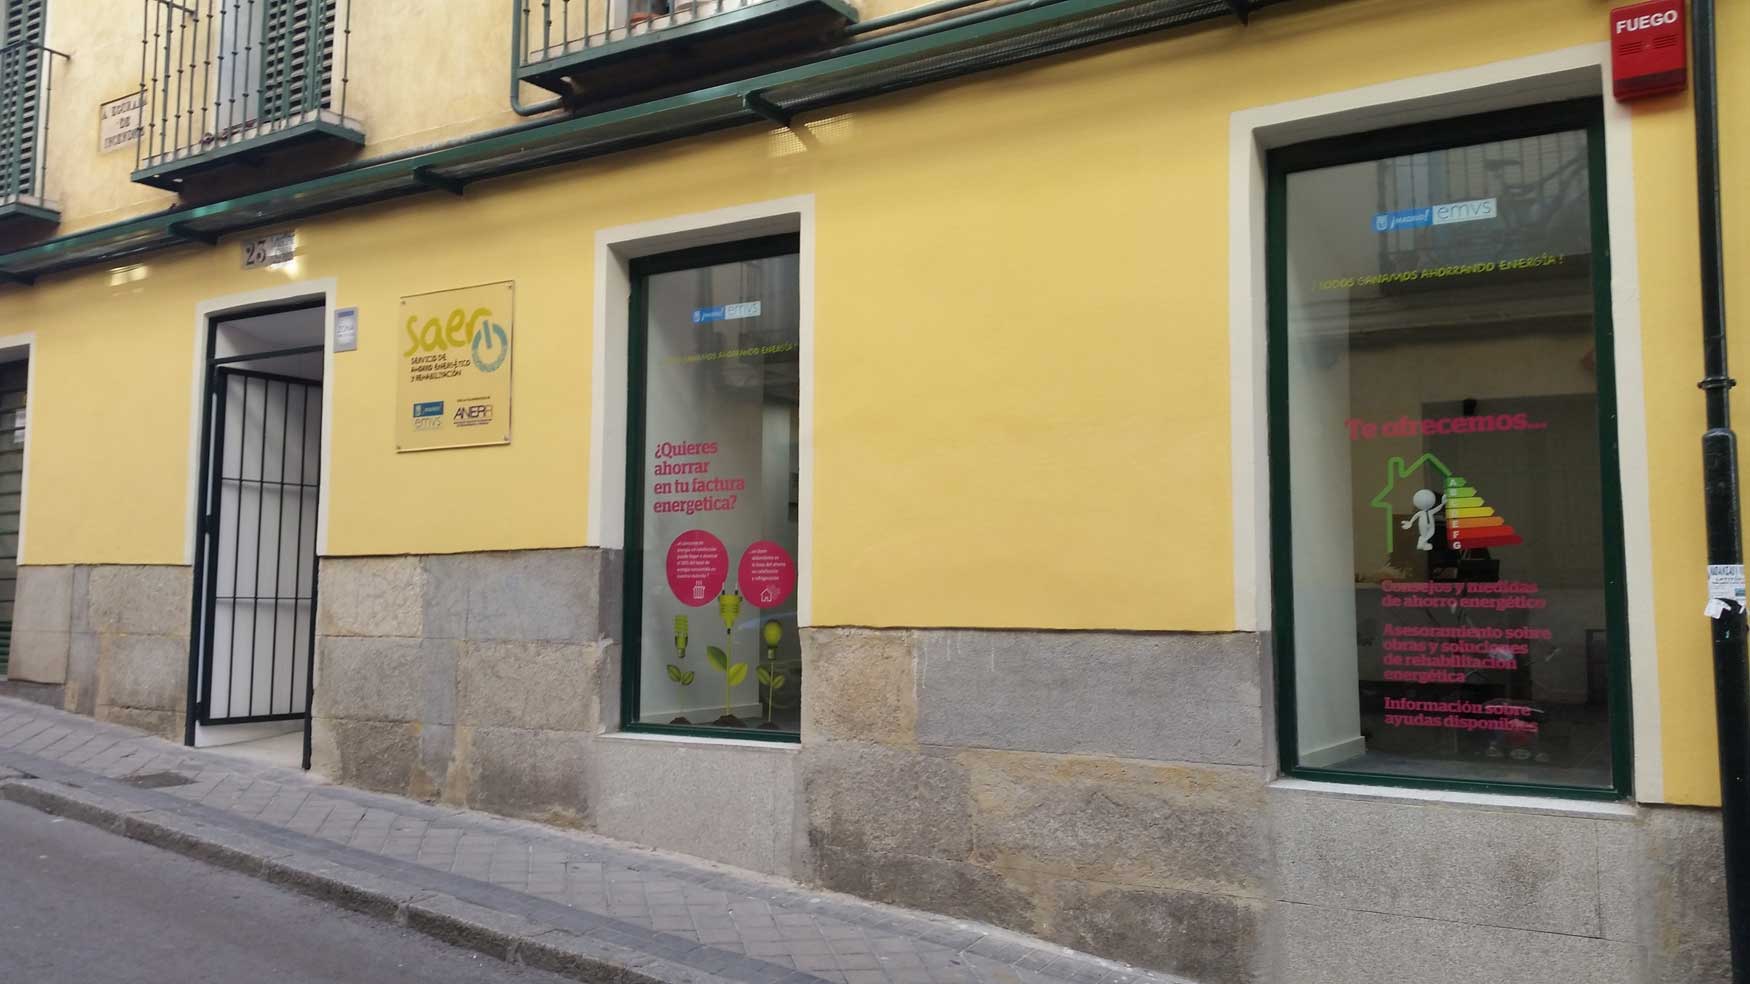 Punto de Informacin SAER (Servicio de Ahorro Energtico y Rehabilitacin) ubicado en la Calle Zurita, n 25 de Madrid